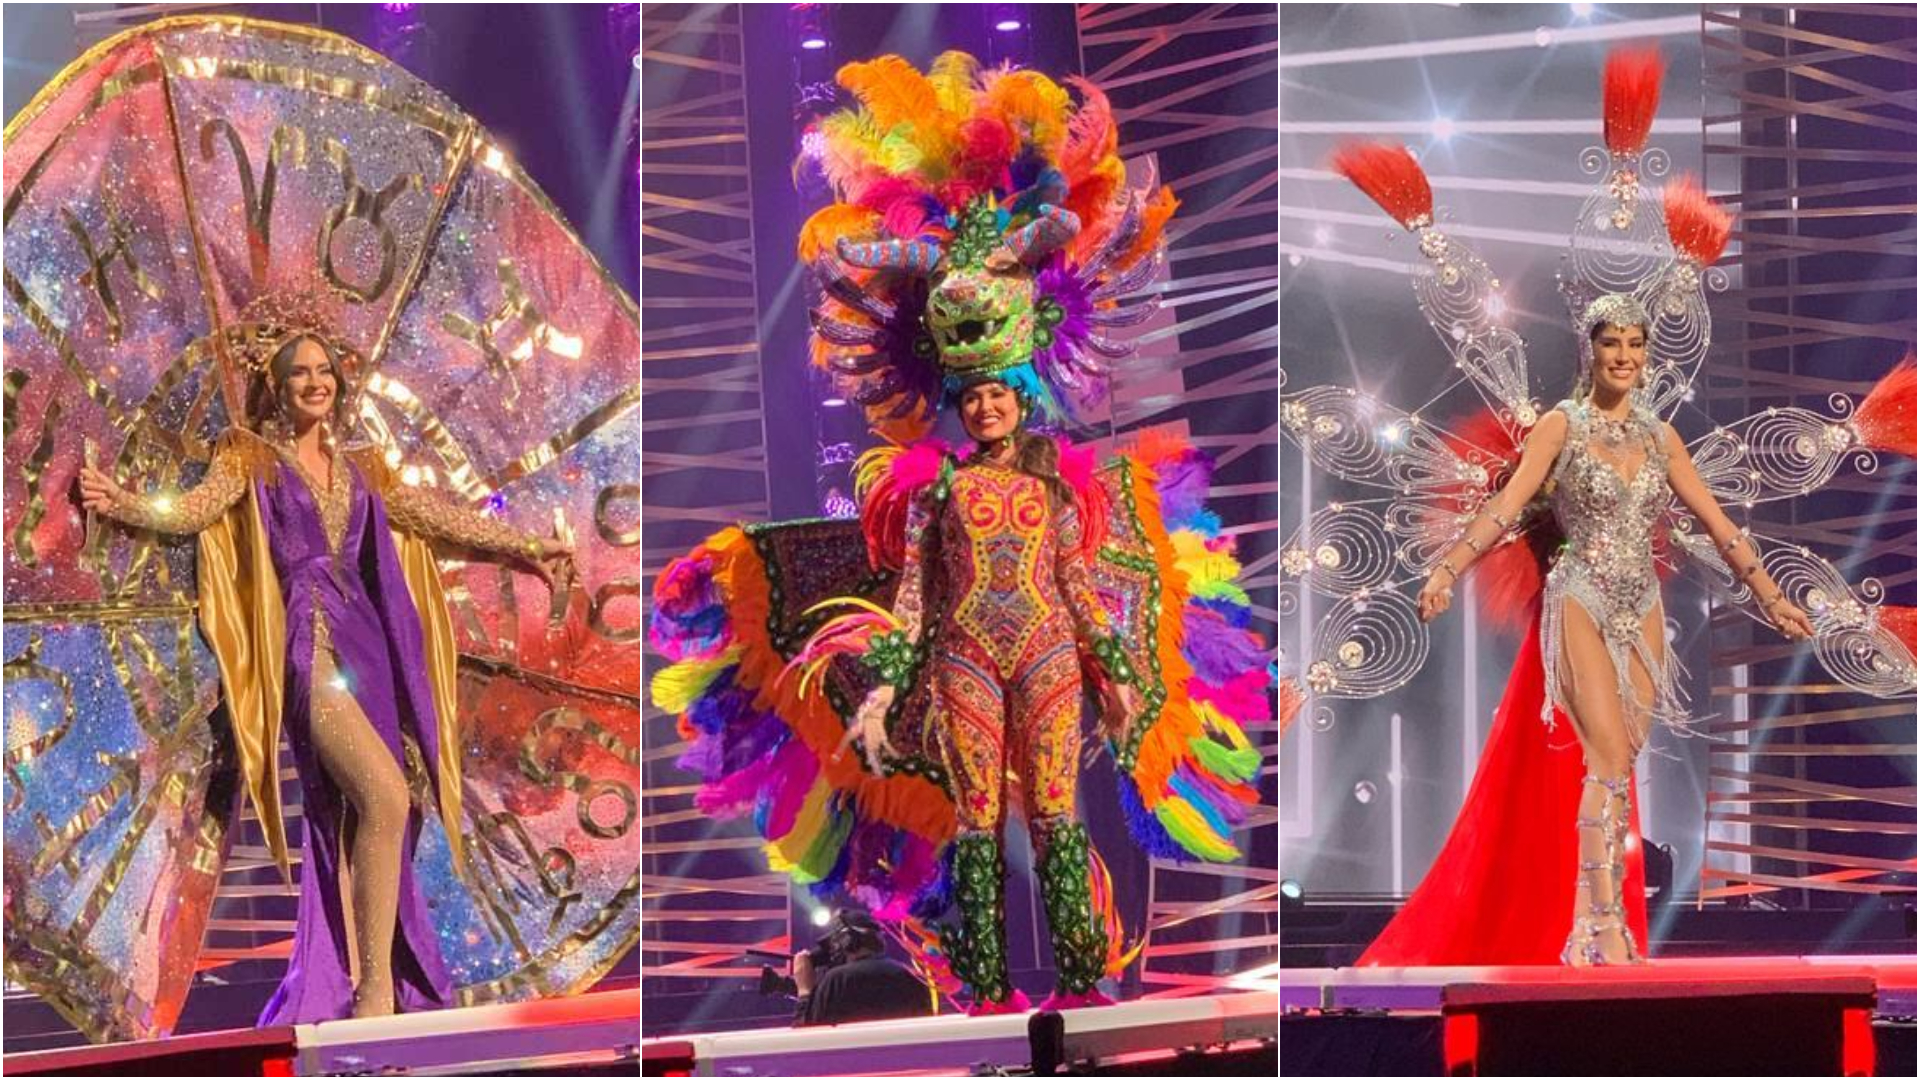 Miss Universo 2021 Mira Aquí Los Mejores Trajes Típicos En El Desfile Diario En El Caribe